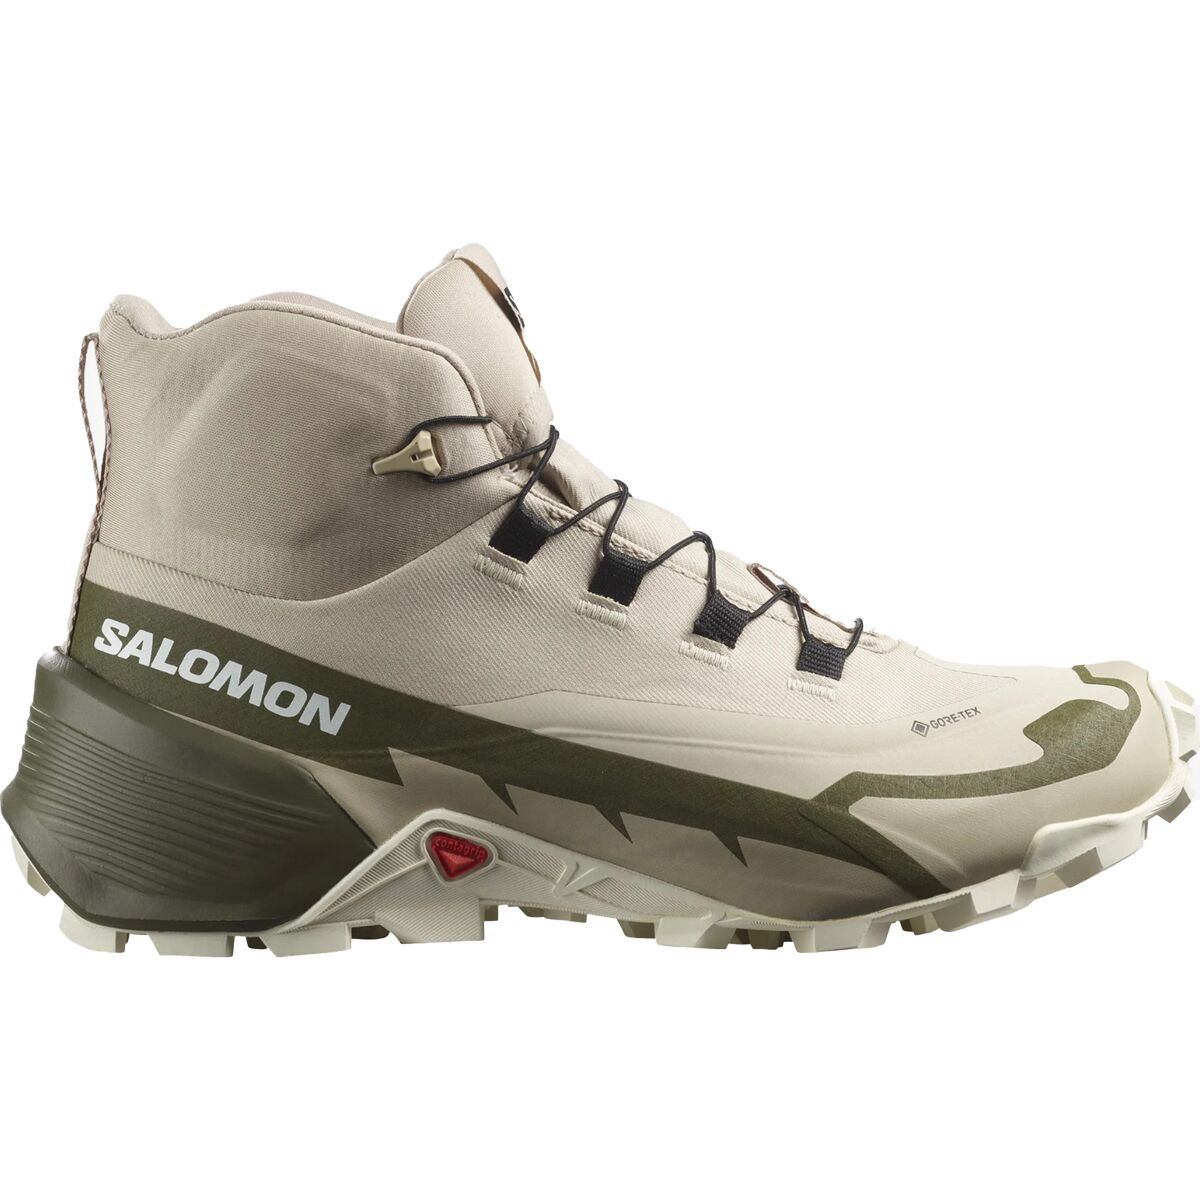 Salomon Cross Hike 2 Mid GTX Boot - Women's - Footwear | Backcountry